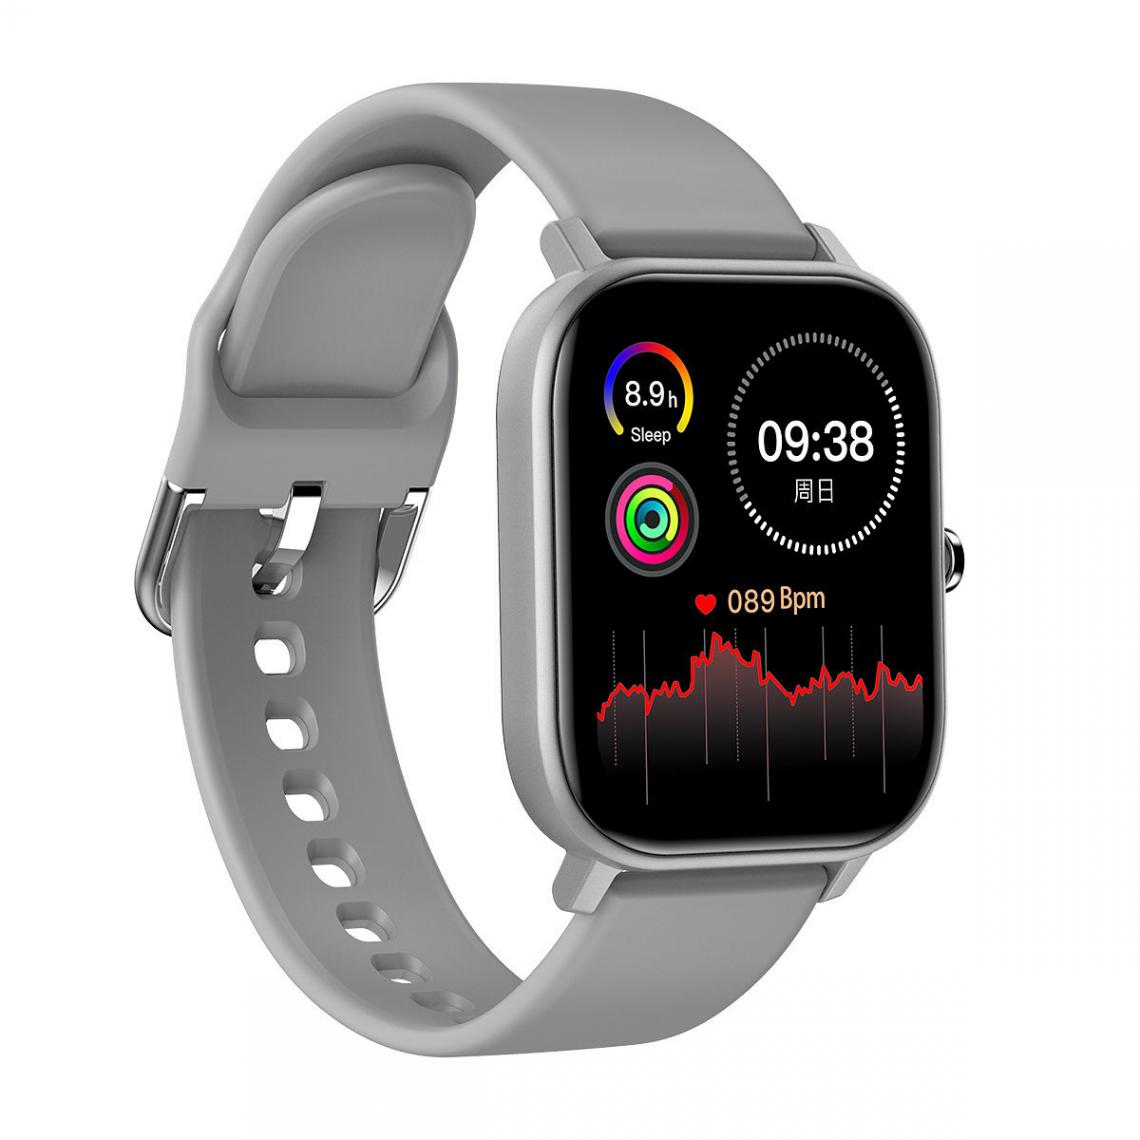 Chrono - Montre Connectée Femme Homme Smartwatch Montre Sport étanche IP68 ECG moniteur de température corporelle pour Android iOS-Gris - Montre connectée